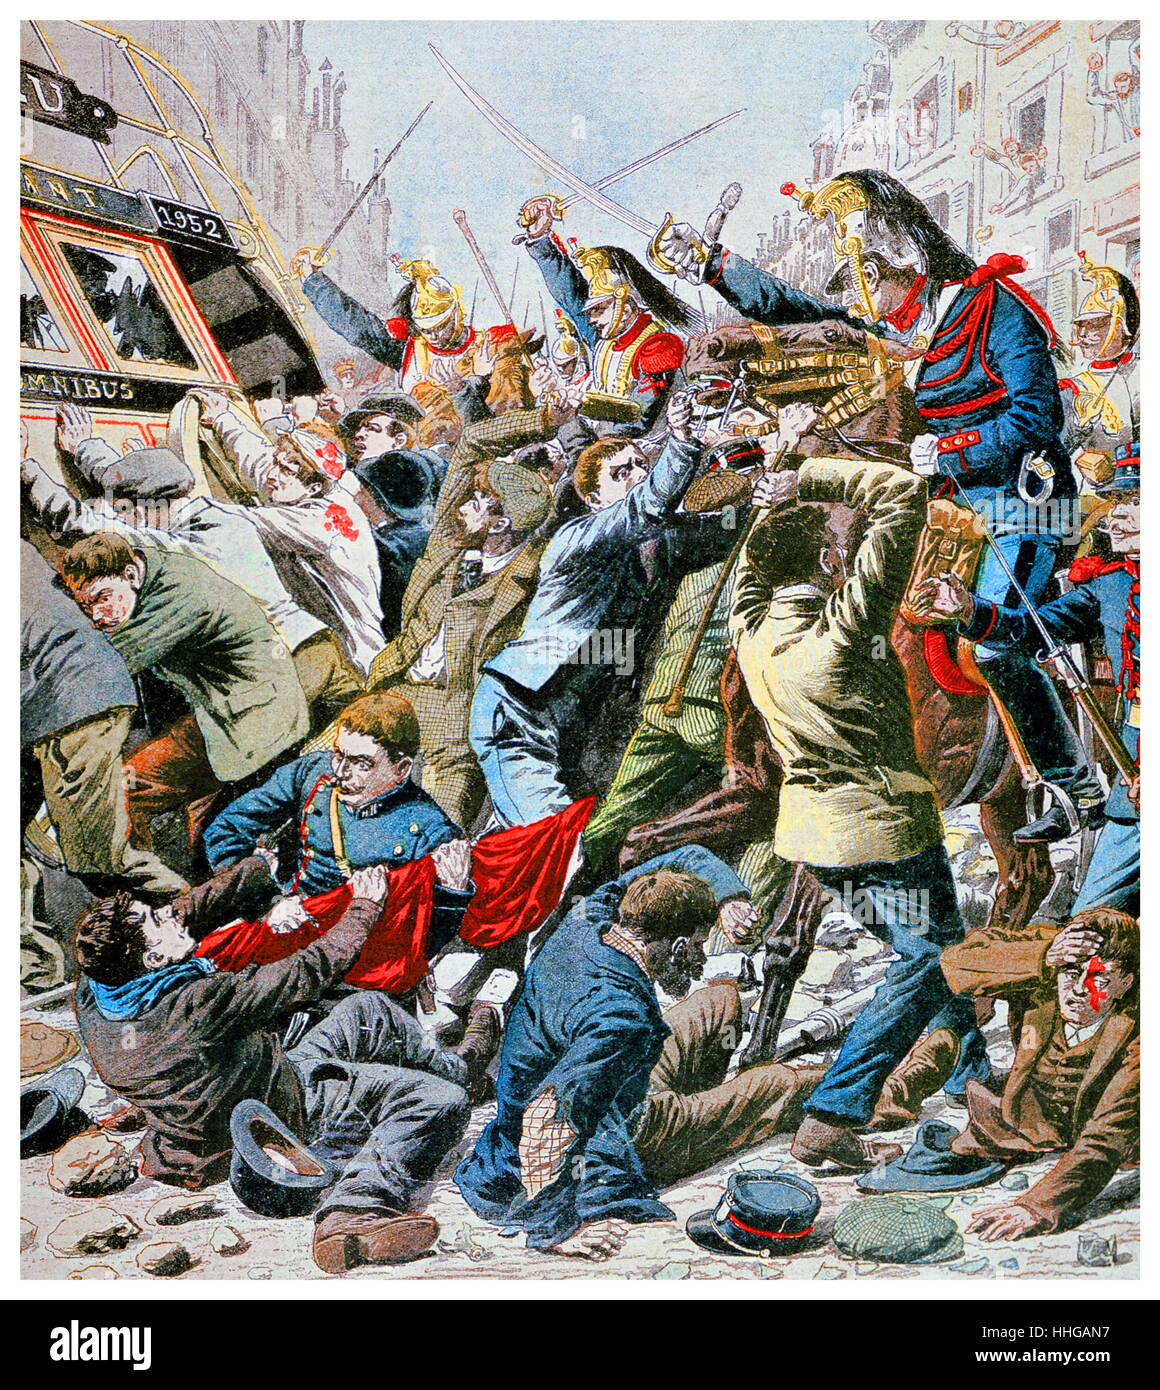 Charge de cavalerie protestataires lors d'émeutes à Paris le jour de mai. Illustration pour le Petit Journal, 13 mai 1906. Banque D'Images